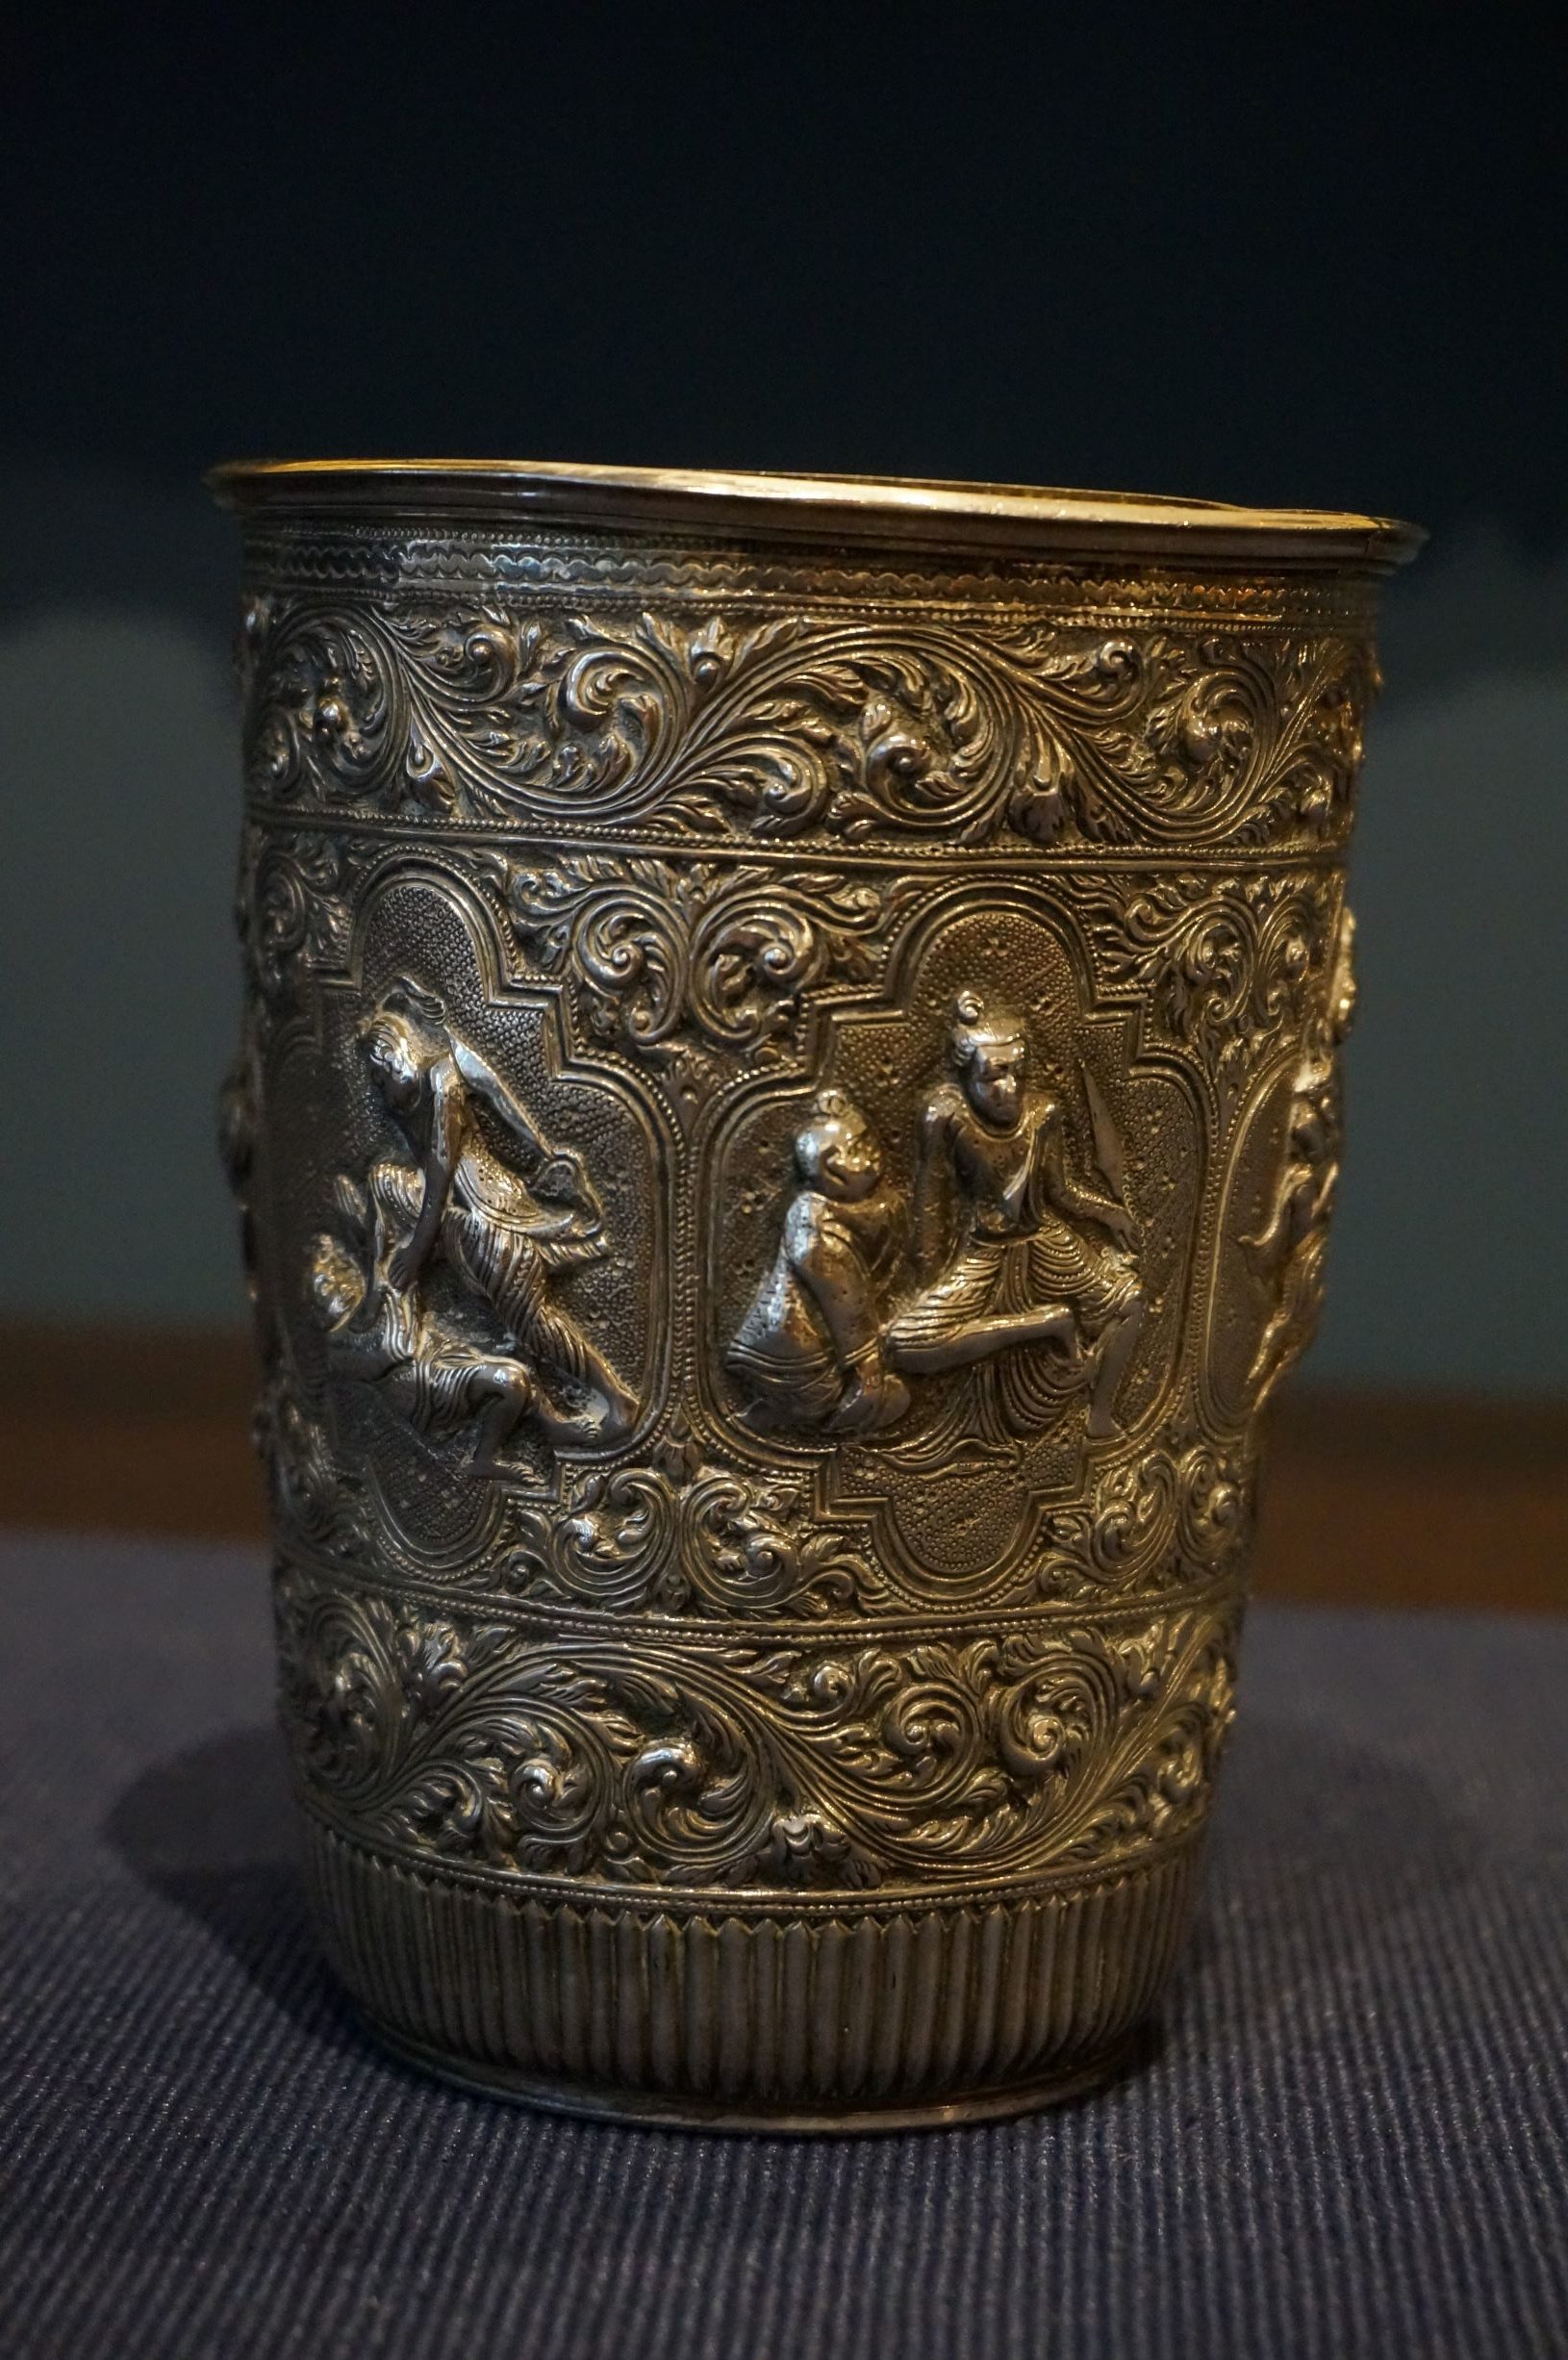 Zweet En vezel nl]Birmese zilveren beker, rond 1900[:en]Birmese Sterling silver beaker,  around 1900[:] - Dullaert Art & Antiques